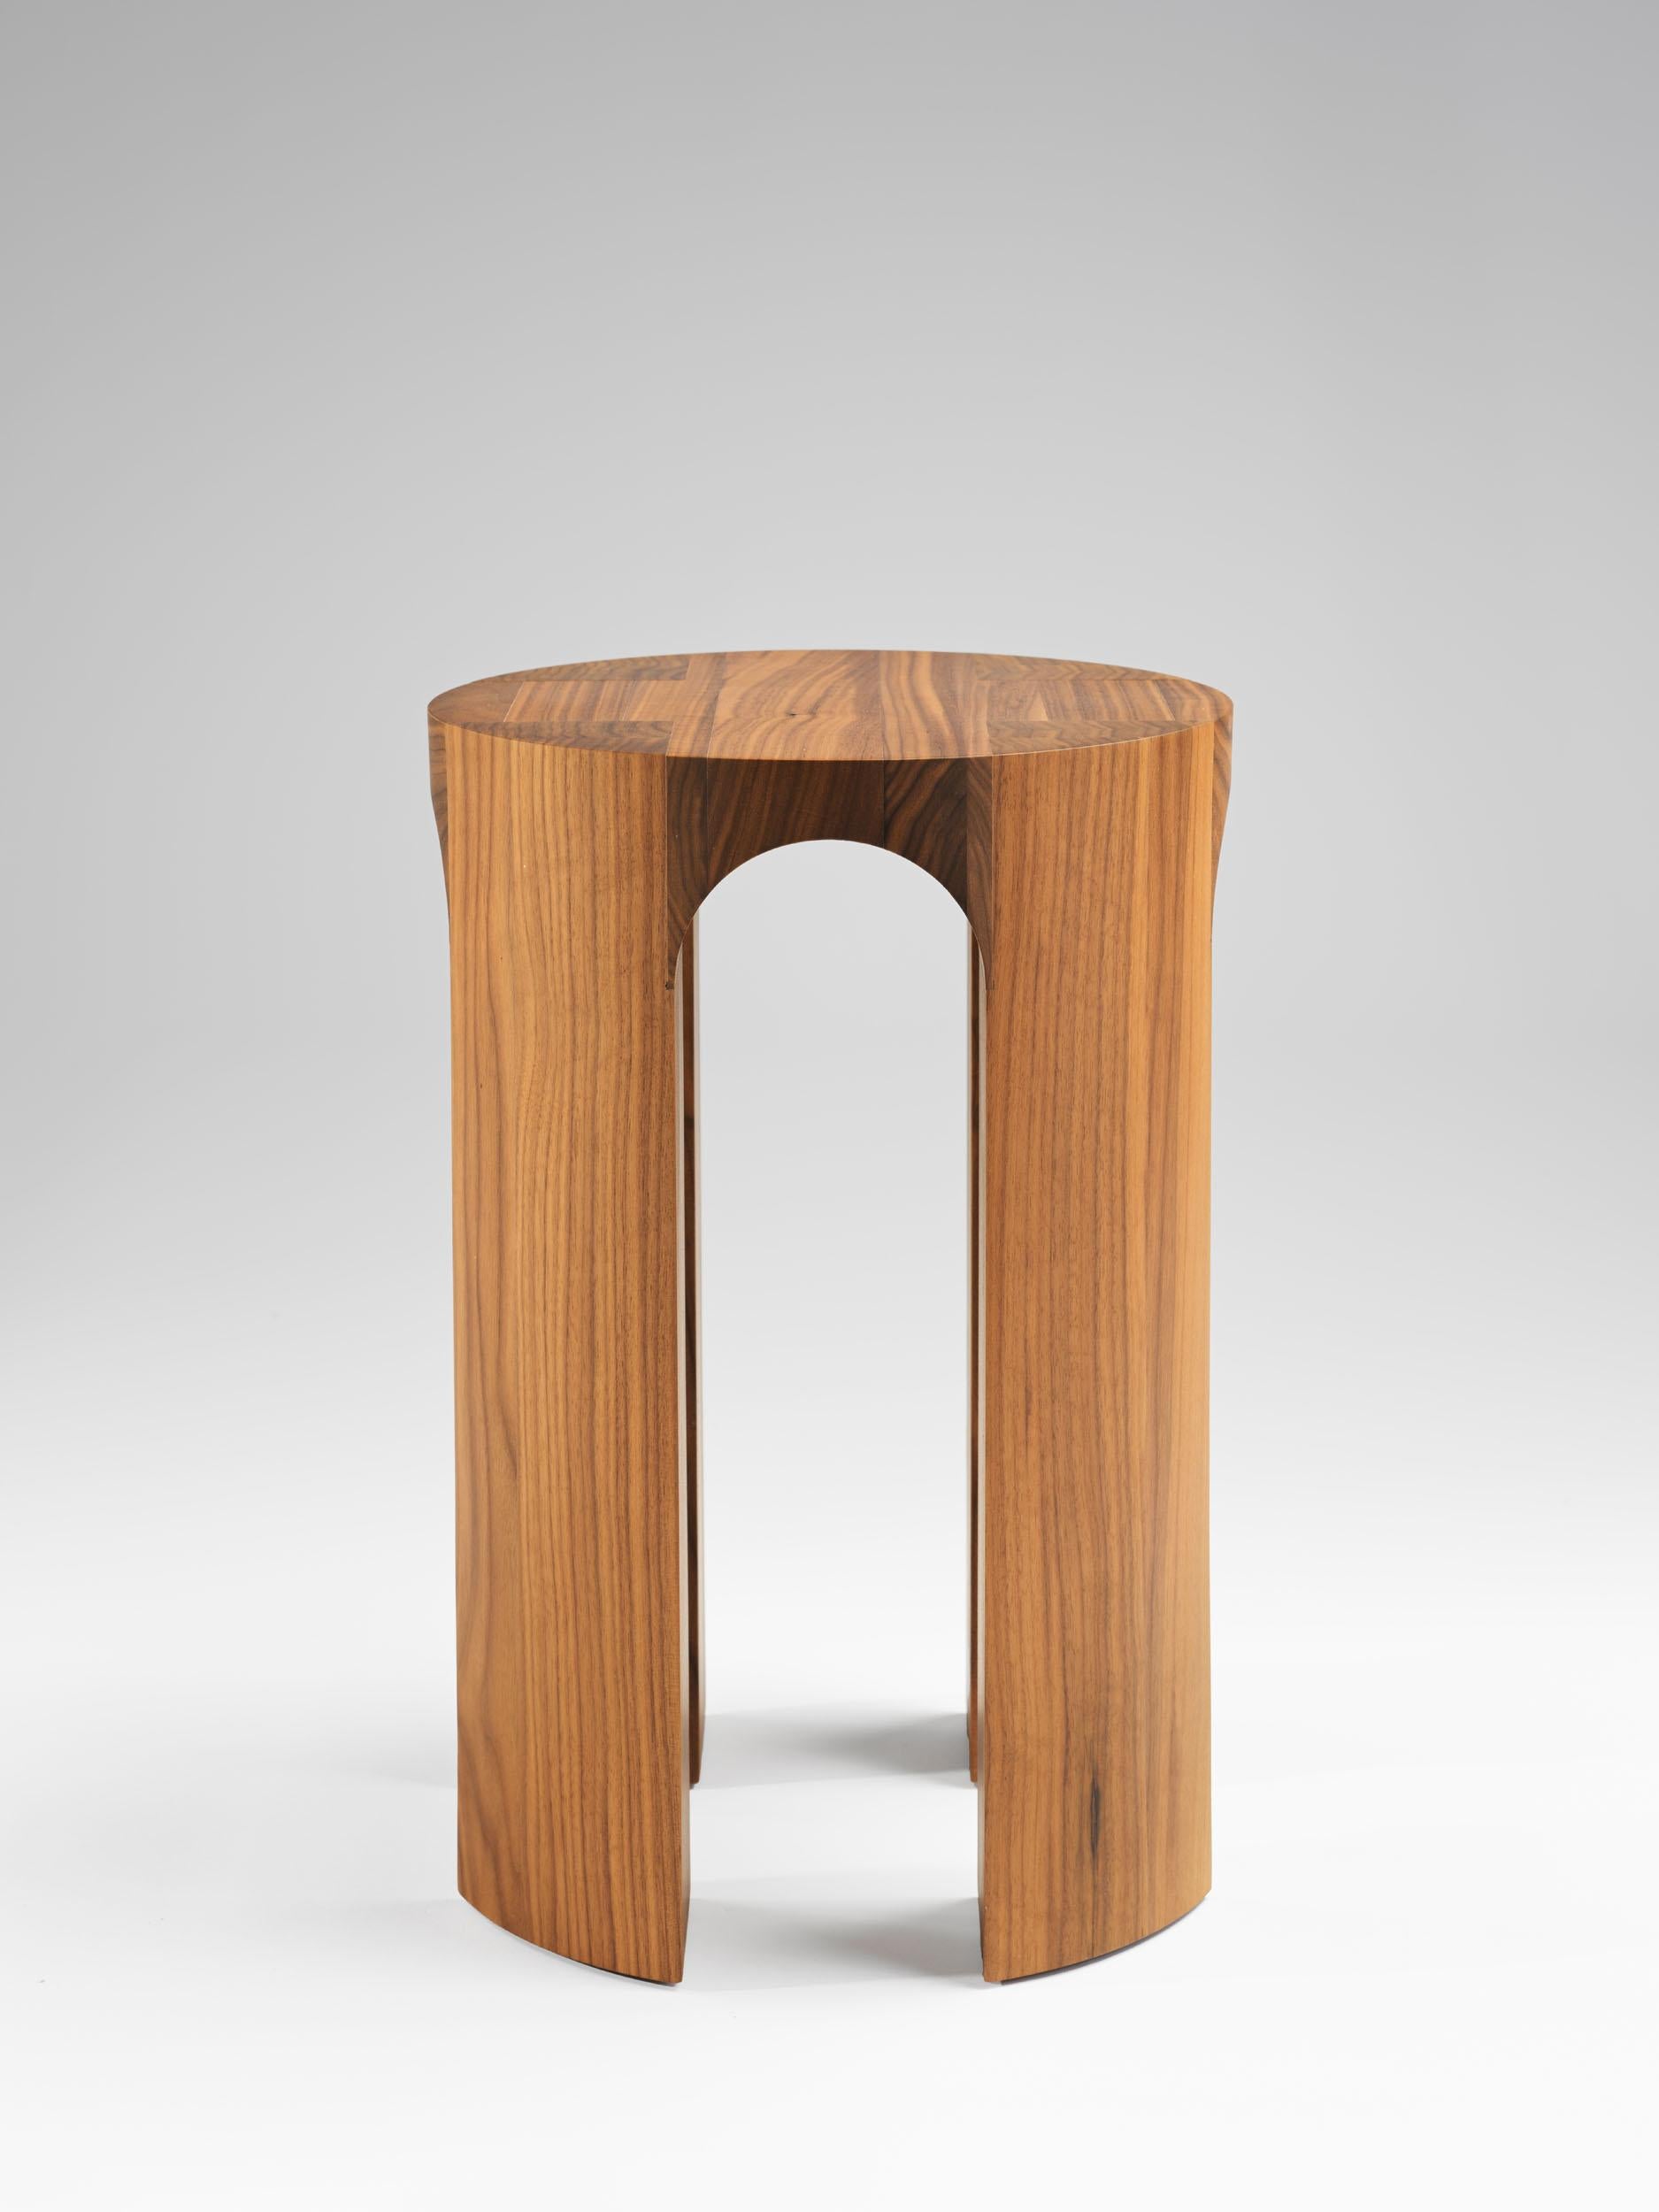 Tim Vranken ist ein belgischer Möbeldesigner, der sich auf solide, handgefertigte Möbel spezialisiert hat. Bei seinen Entwürfen stehen die Verwendung reiner Materialien und ehrliche natürliche Prozesse im Vordergrund. Das Ergebnis ist ein